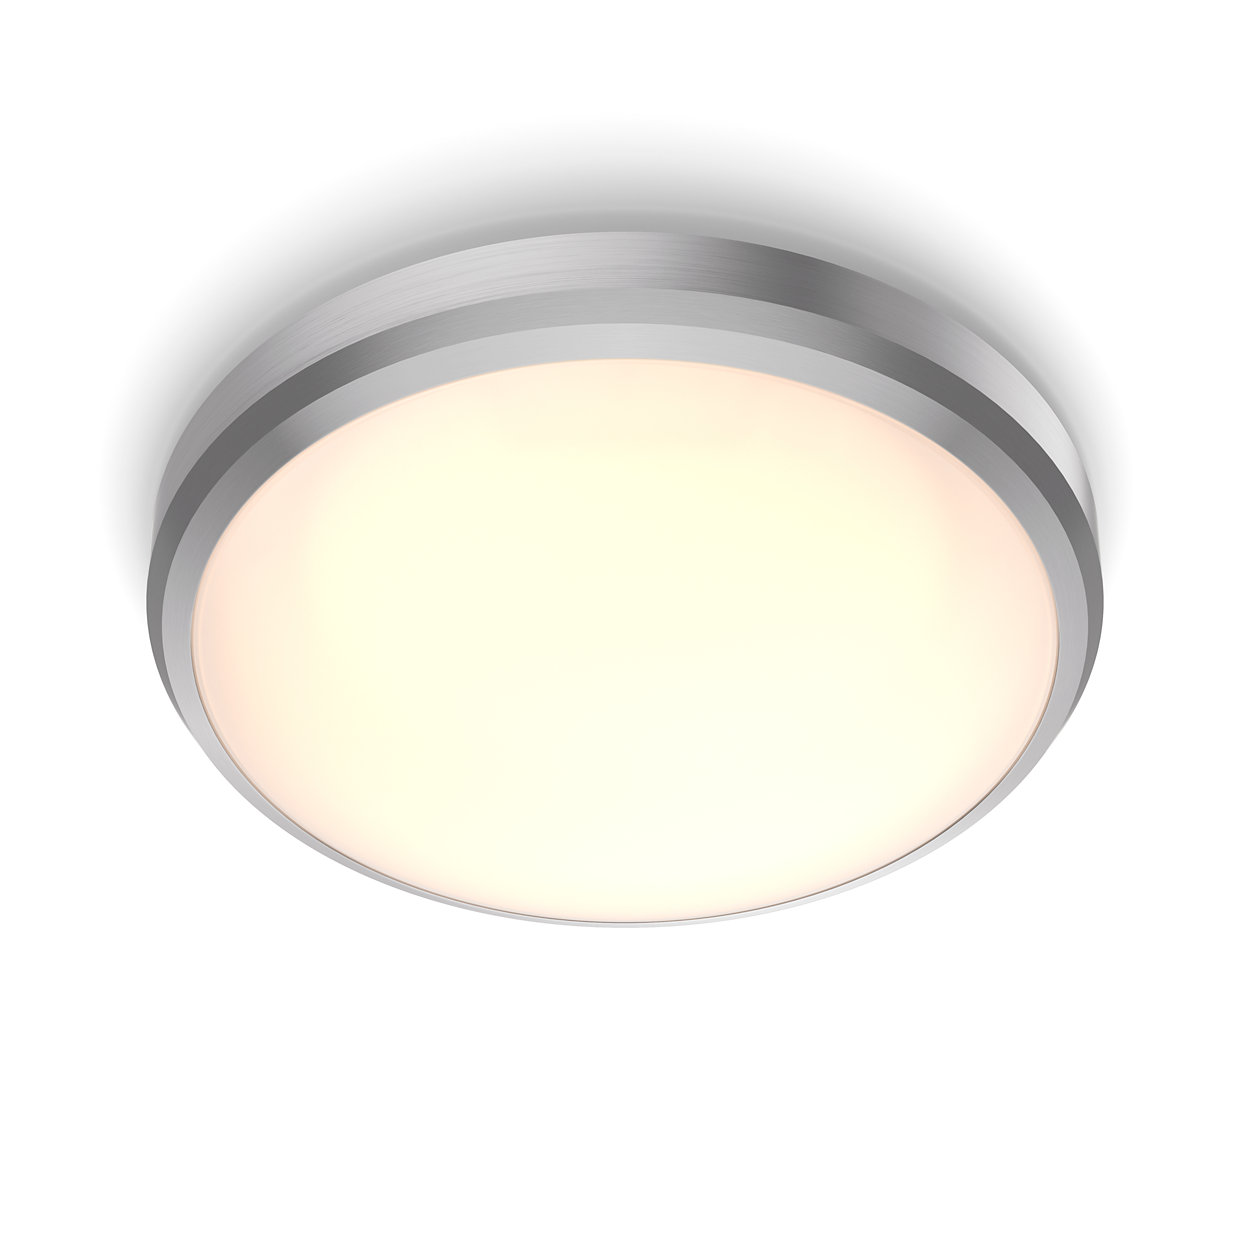 Komfortowe oświetlenie LED, które nie jest męczące dla oczu